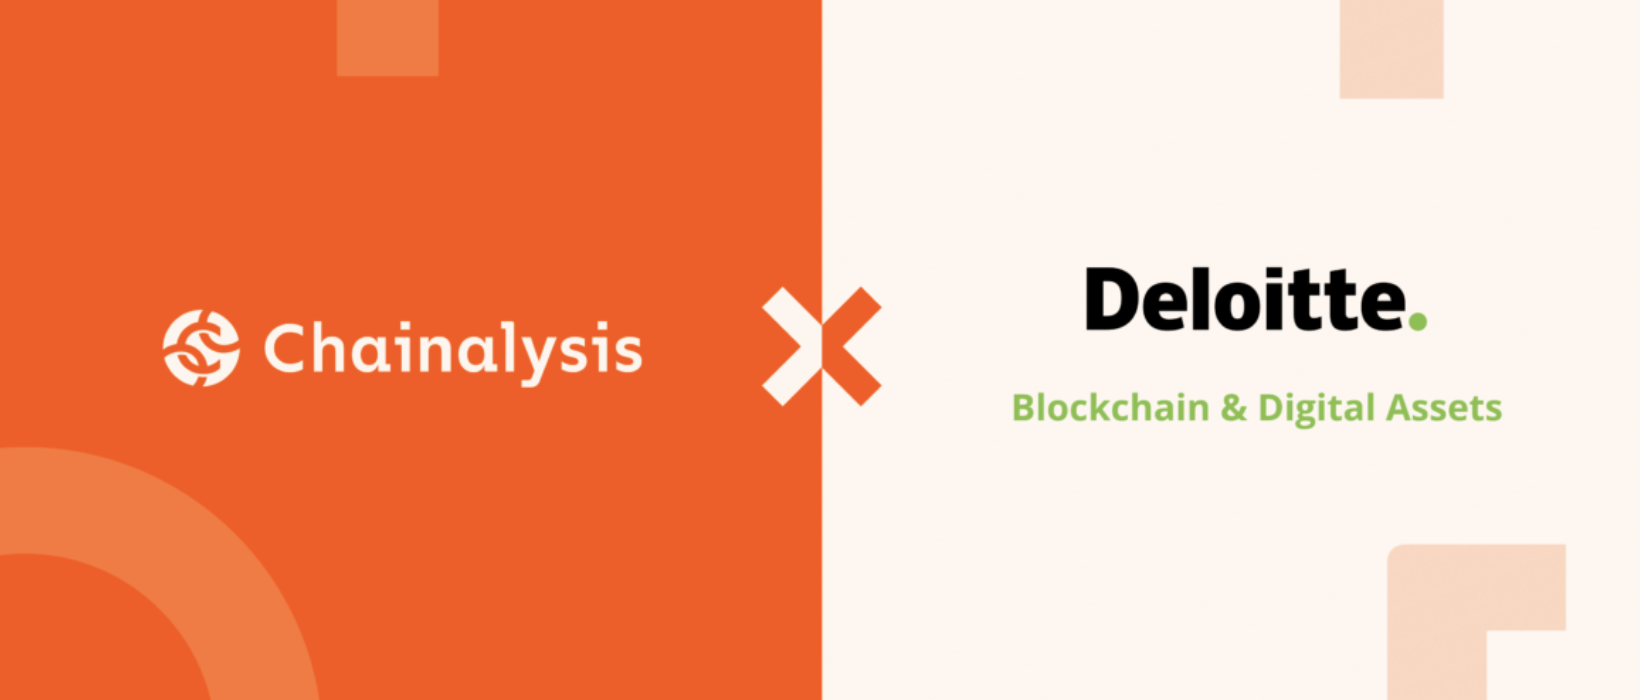 Deloitte et Chainalysis annoncent une alliance pour fournir des solutions et des services de données et d'analyse d'actifs numériques